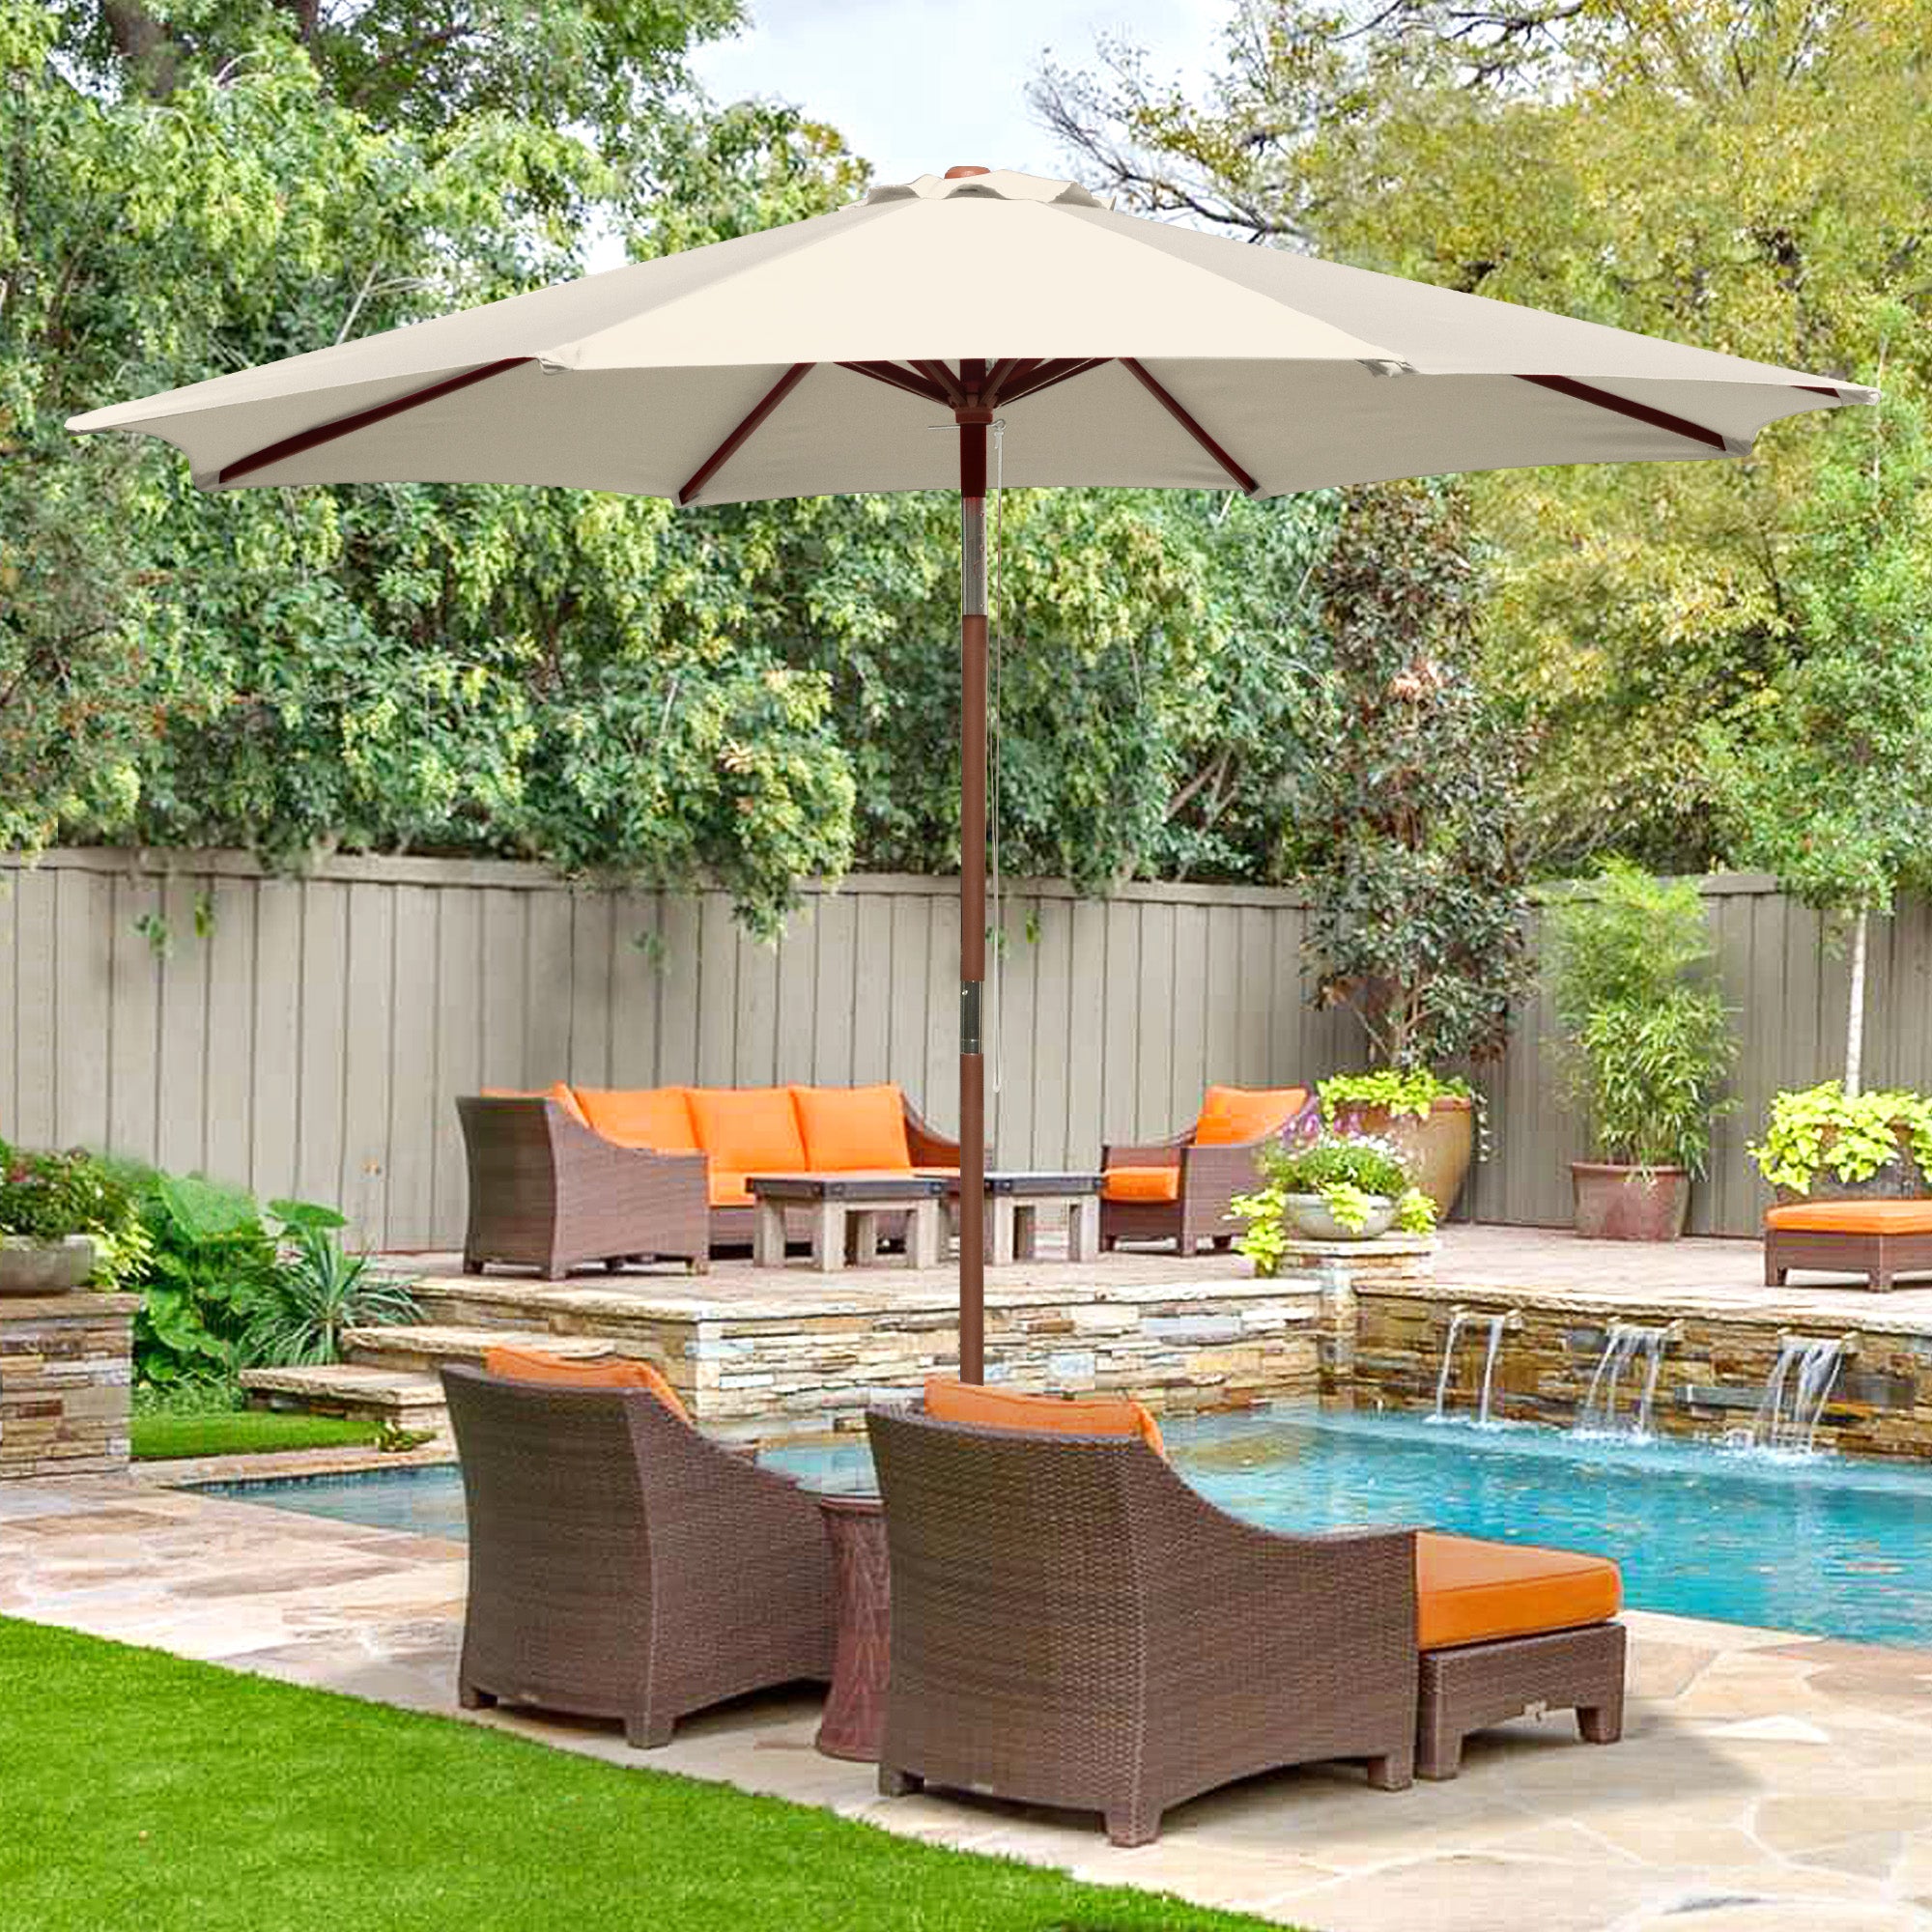 LAGarden 9 Ft Wooden Patio Umbrella 8 Ribs Easy Tilt Table Parasol Outdoor Backyard Pool